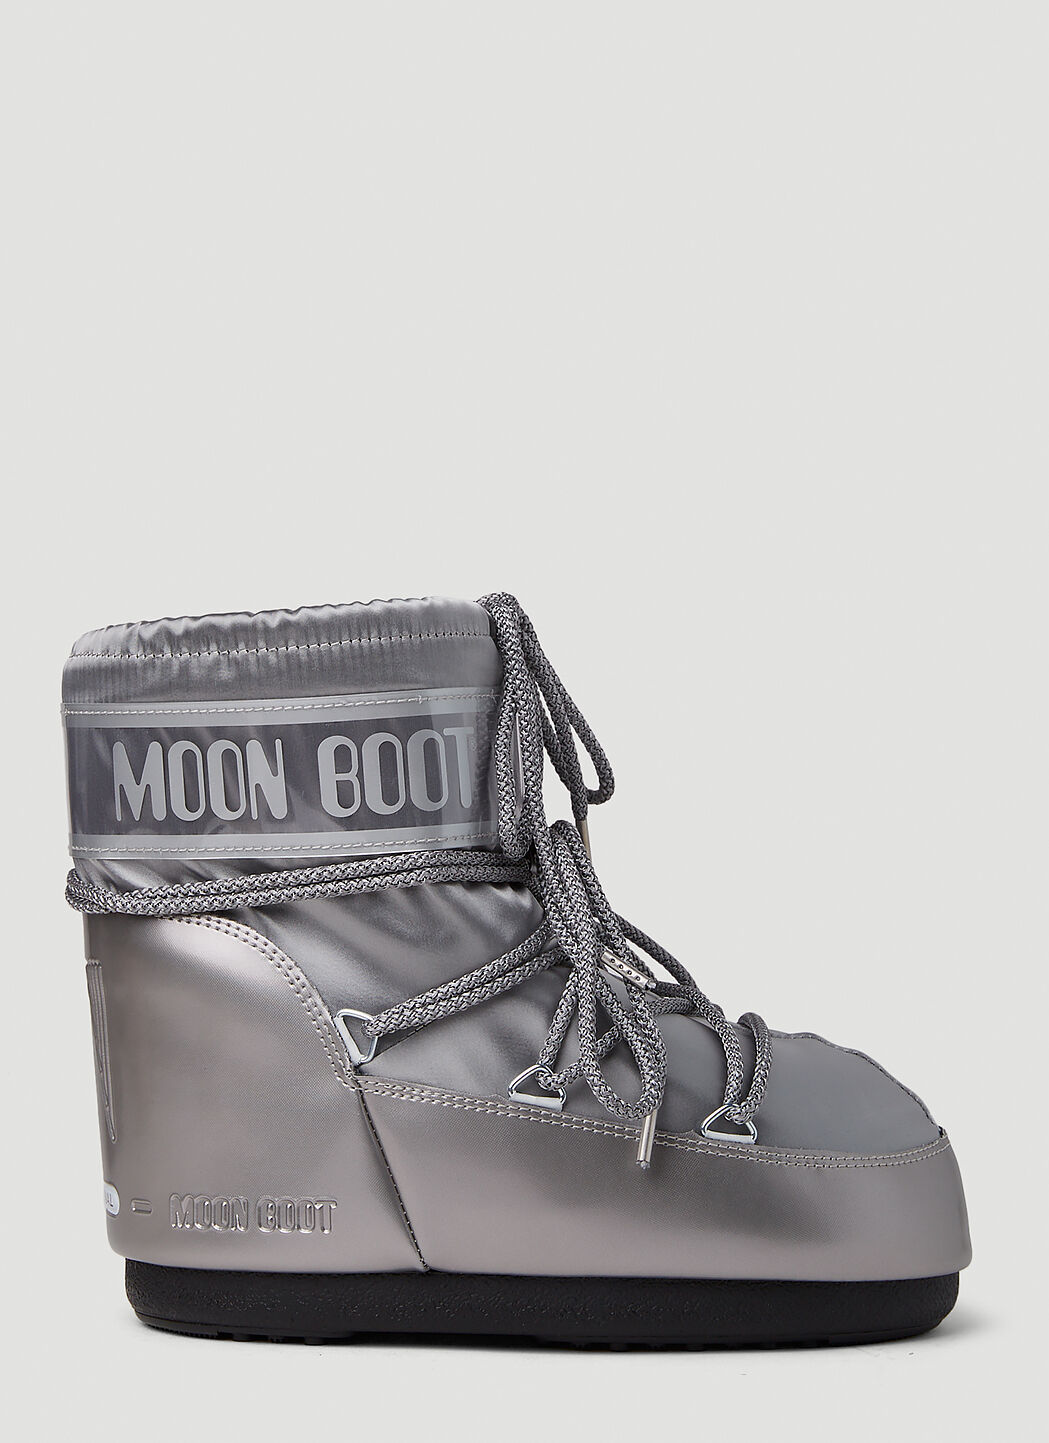 Moon Boot アイコン ローグランス スノーブーツ ブラック mnb0355001